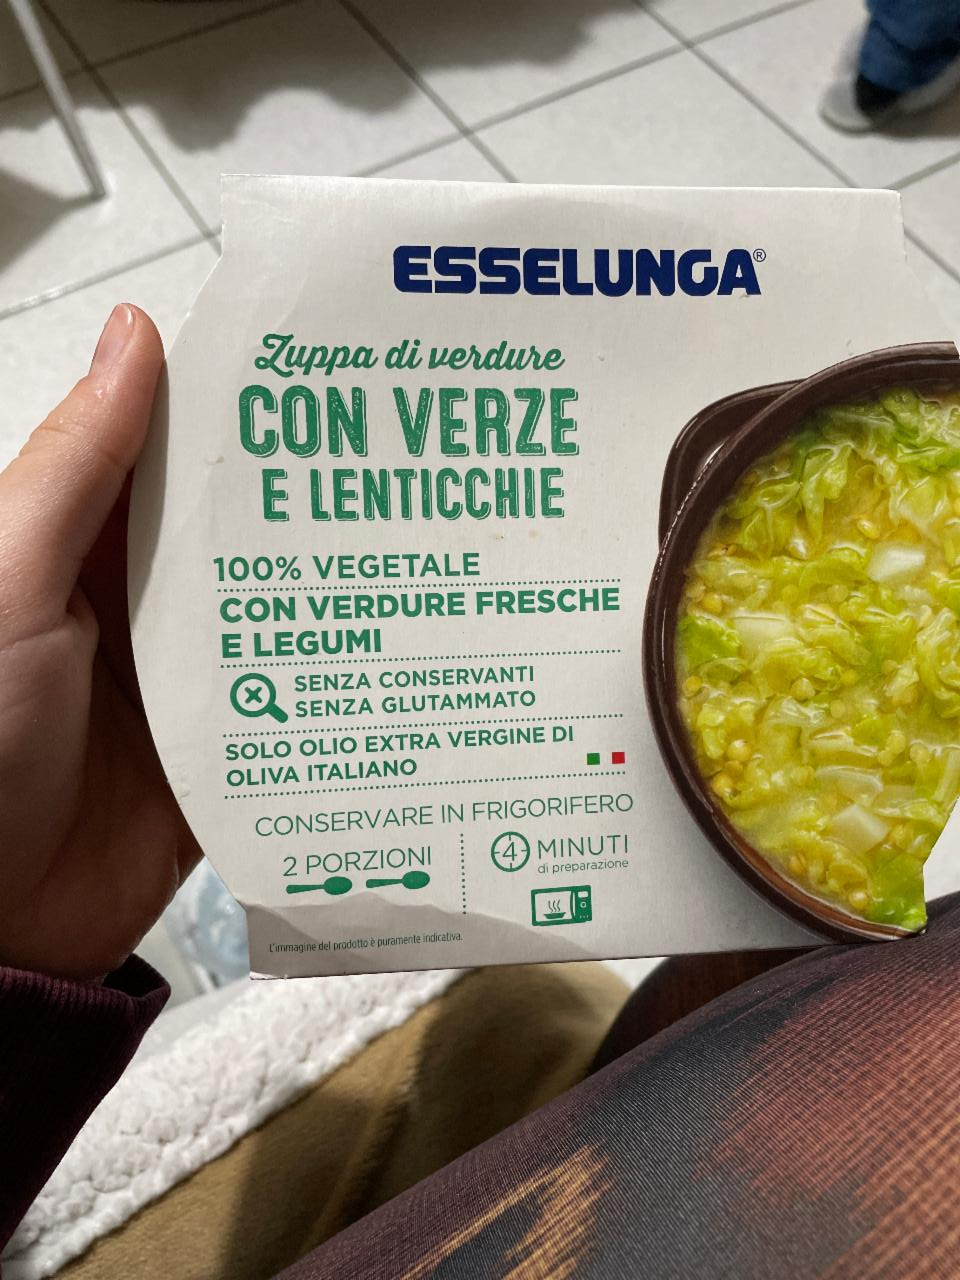 Фото - суп c чечевицей con verze e lenticchie Esselunga